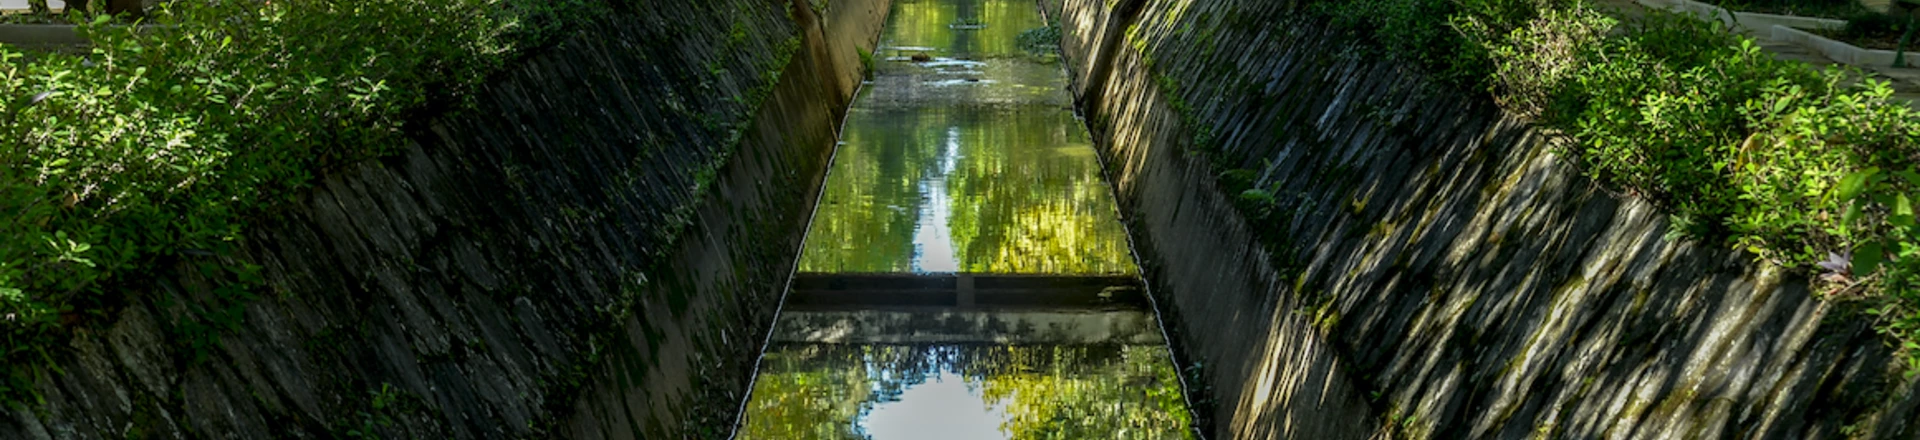 Canal do Rio Bengo, no Parque das Águas, em Caxambu, Minas Gerais, em 26.01.2014.